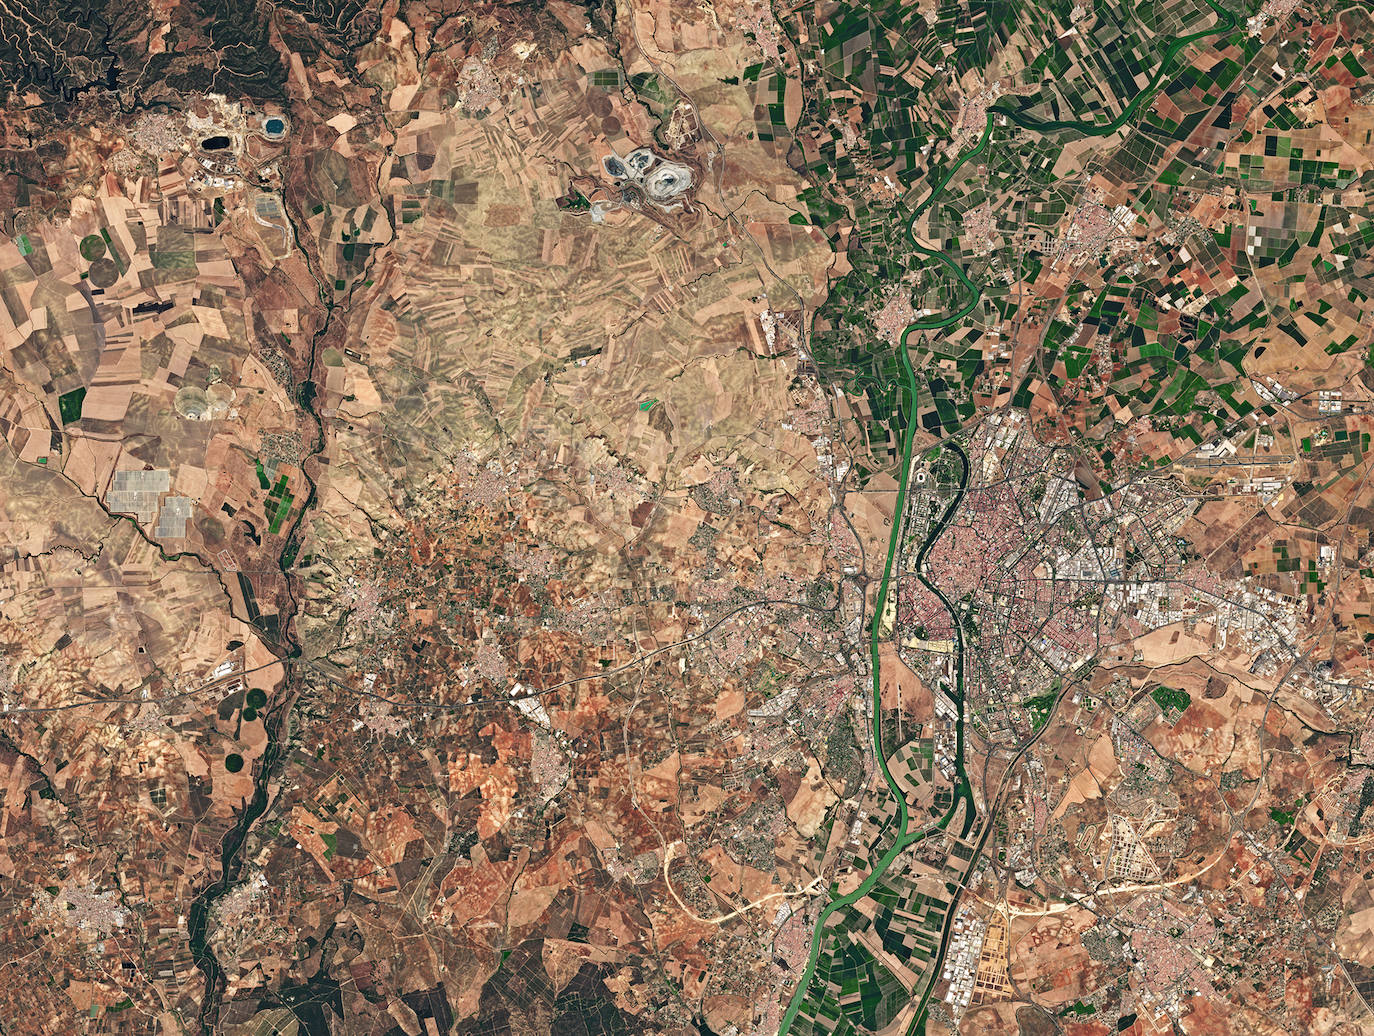 4. Sevilla: imagen tomada por el satélite Sentinel-2A en 2016. Muestra la zona oeste de la provincia así como la capital y el río Guadalquivir.